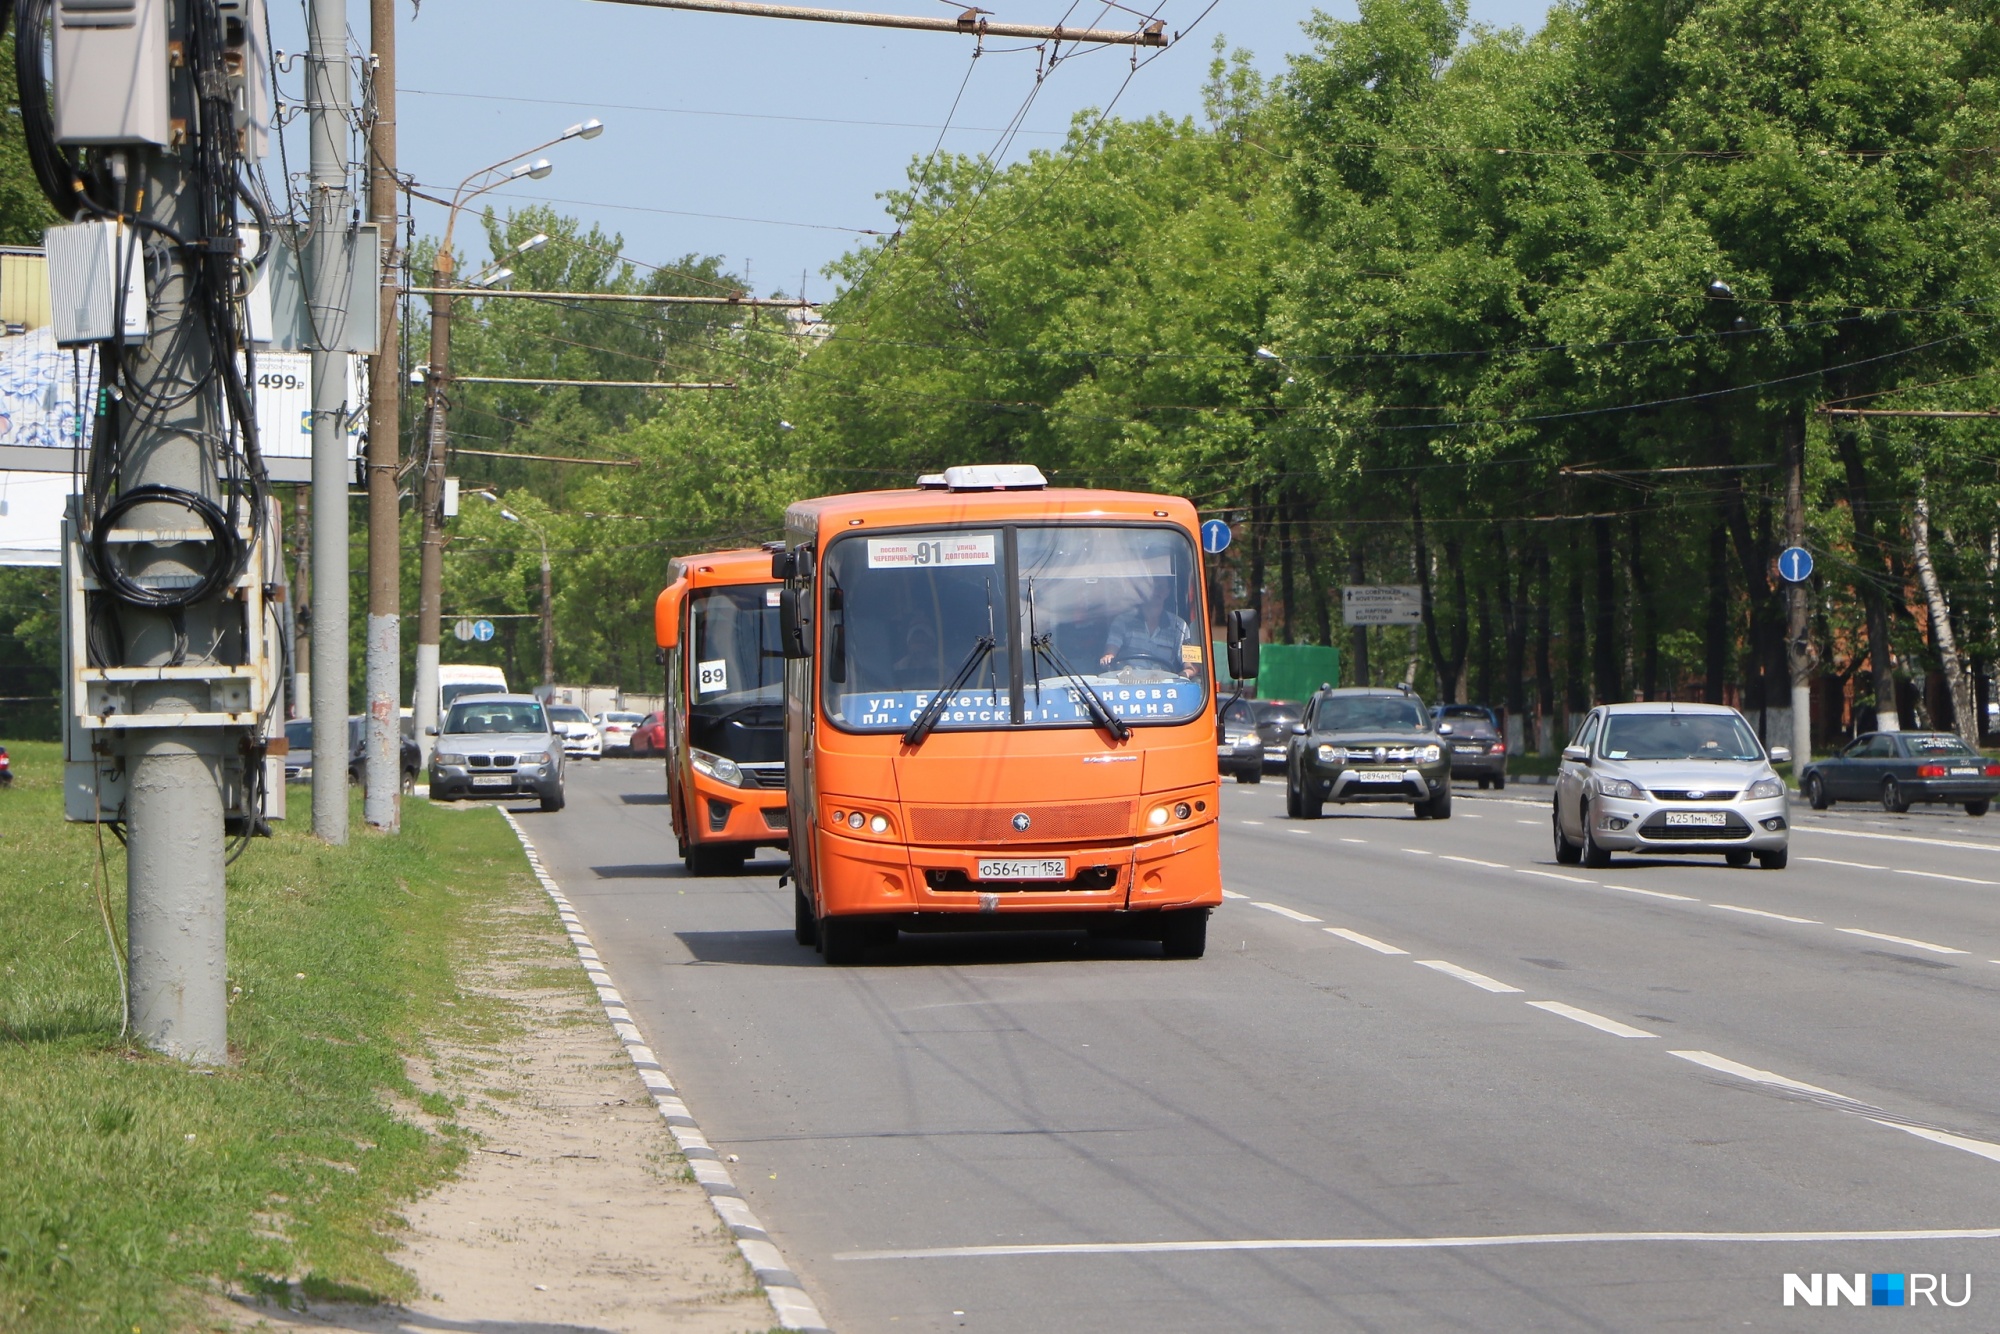 Мэр сказал «Поехали!»: на Гагарина появится выделенная полоса для общественного транспорта